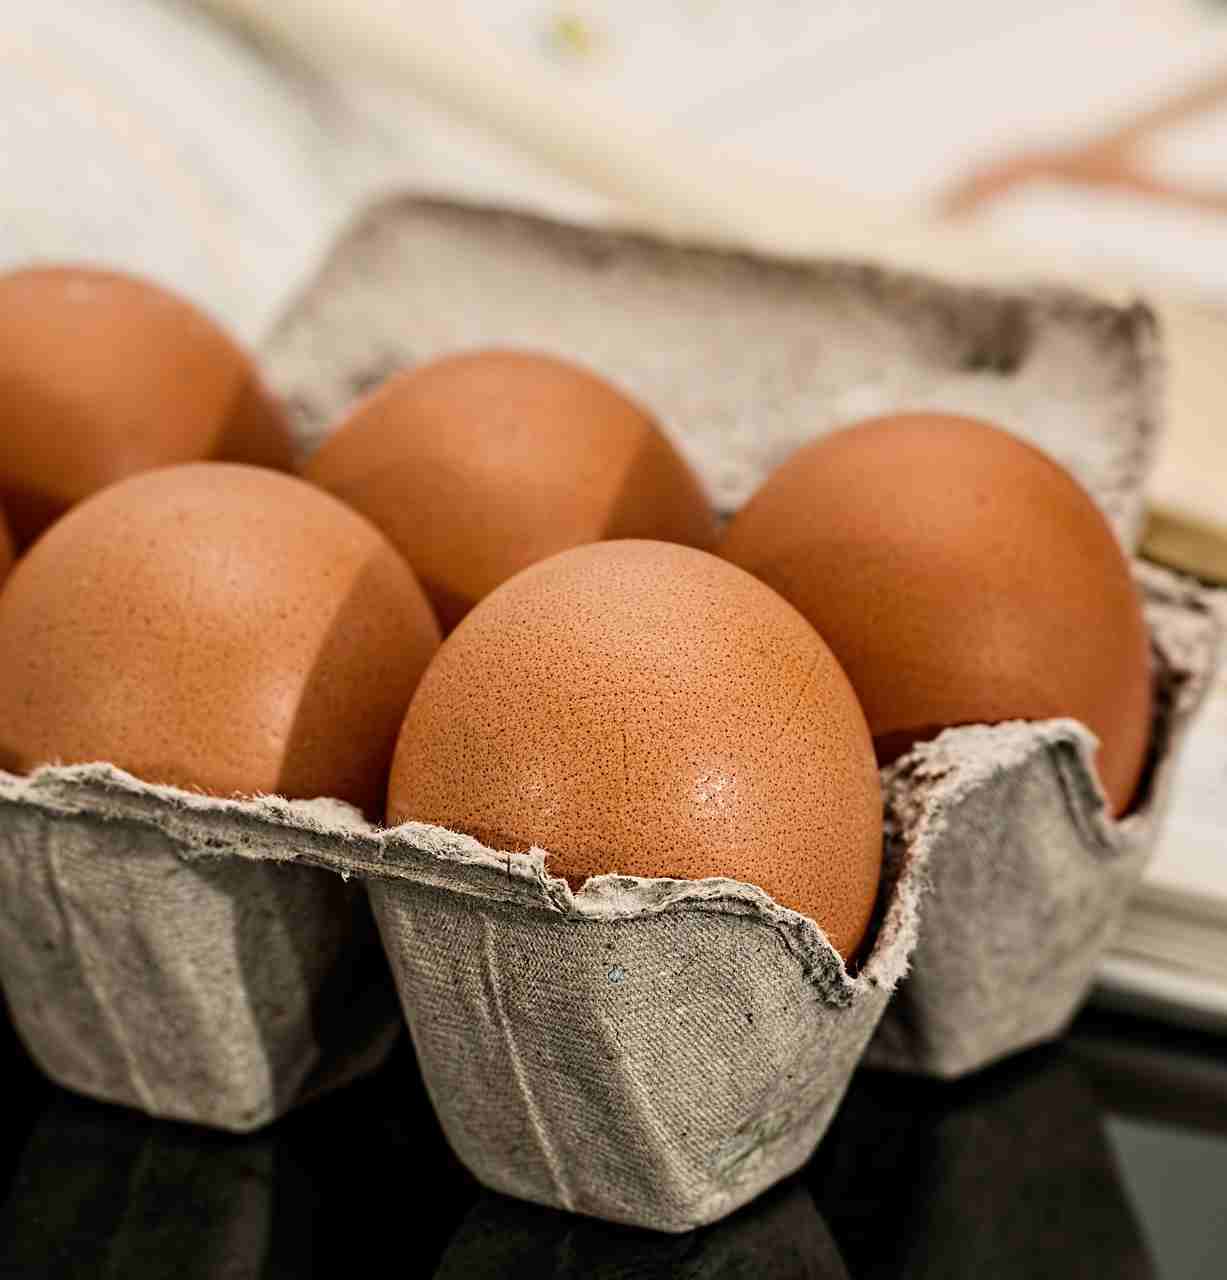 Потребление яиц не увеличивает риск сердечно-сосудистых заболеваний: ИССЛЕДОВАНИЕ